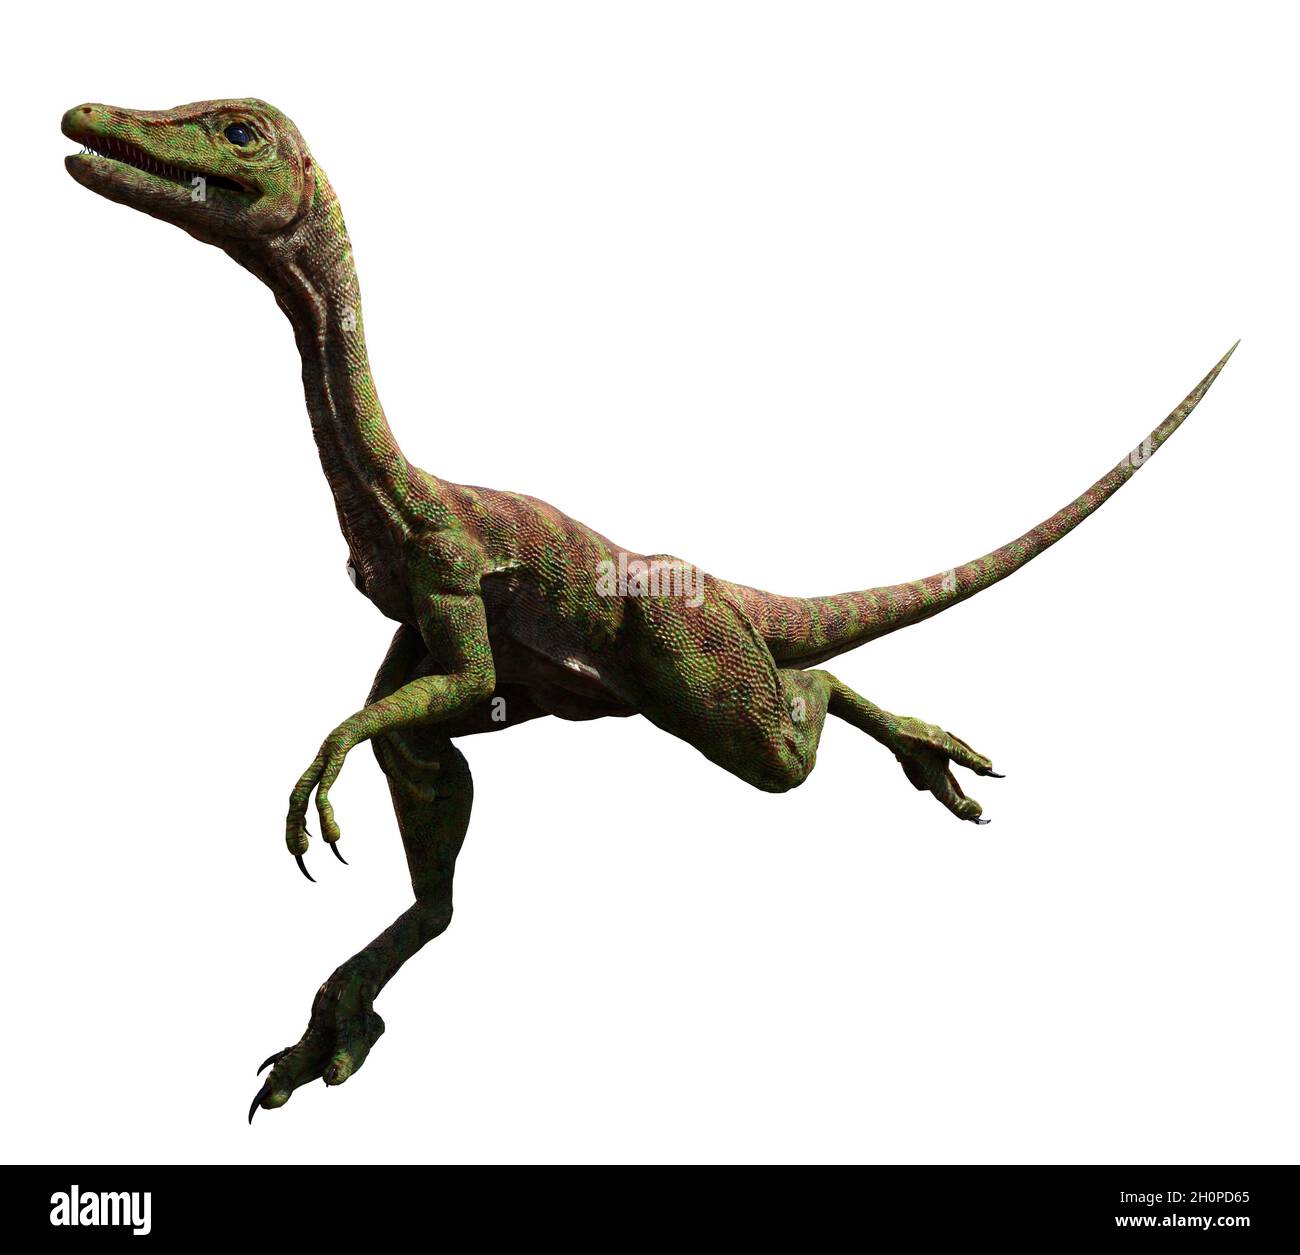 Compsognathus longipes attacco, piccolo dinosauro del tardo periodo giurassico, isolato su sfondo bianco Foto Stock